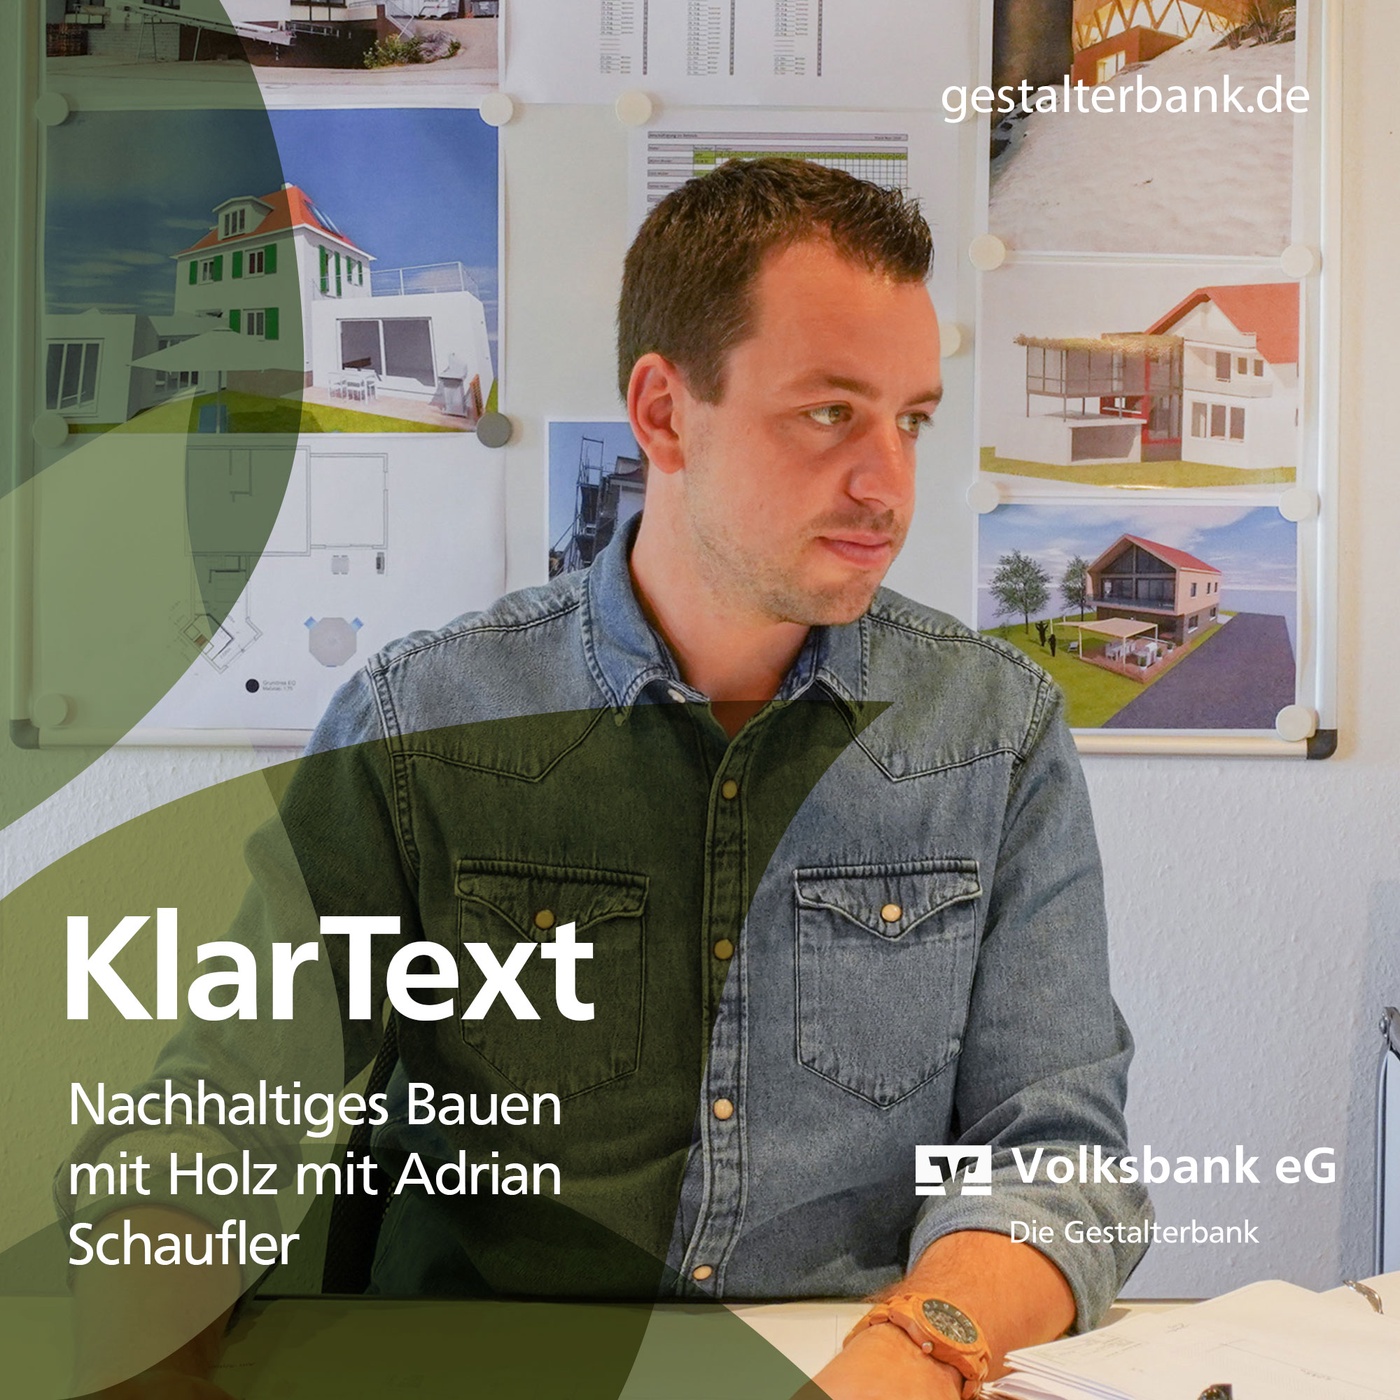 Episode 13: KlarText über nachhaltiges Bauen mit Holz mit Adrian Schaufler